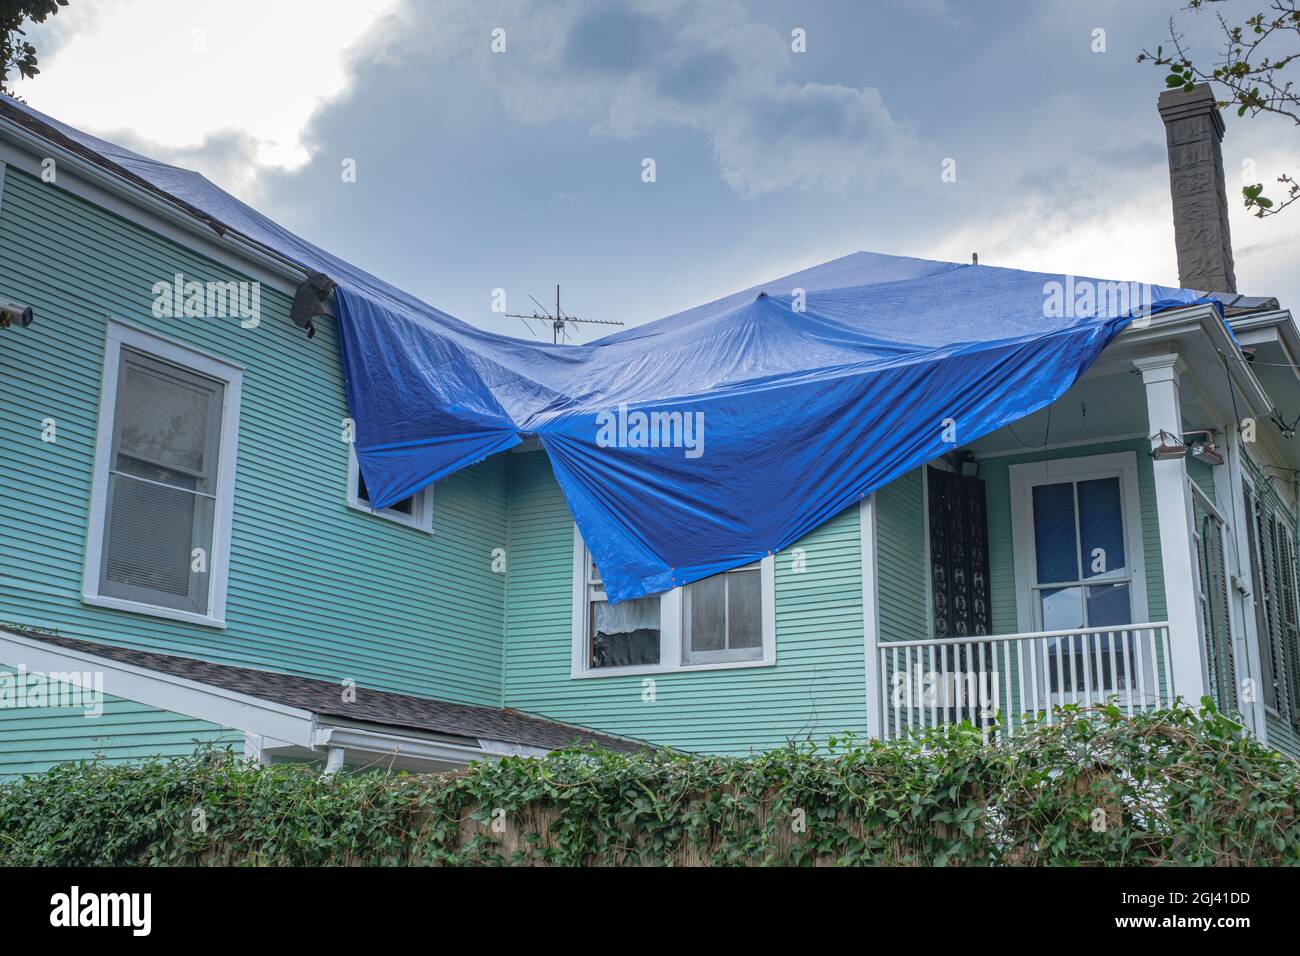 LA NOUVELLE-ORLÉANS, LA, États-Unis - 7 SEPTEMBRE 2021 : bâche bleue sur le toit de la maison endommagée de l'ouragan Ida Banque D'Images